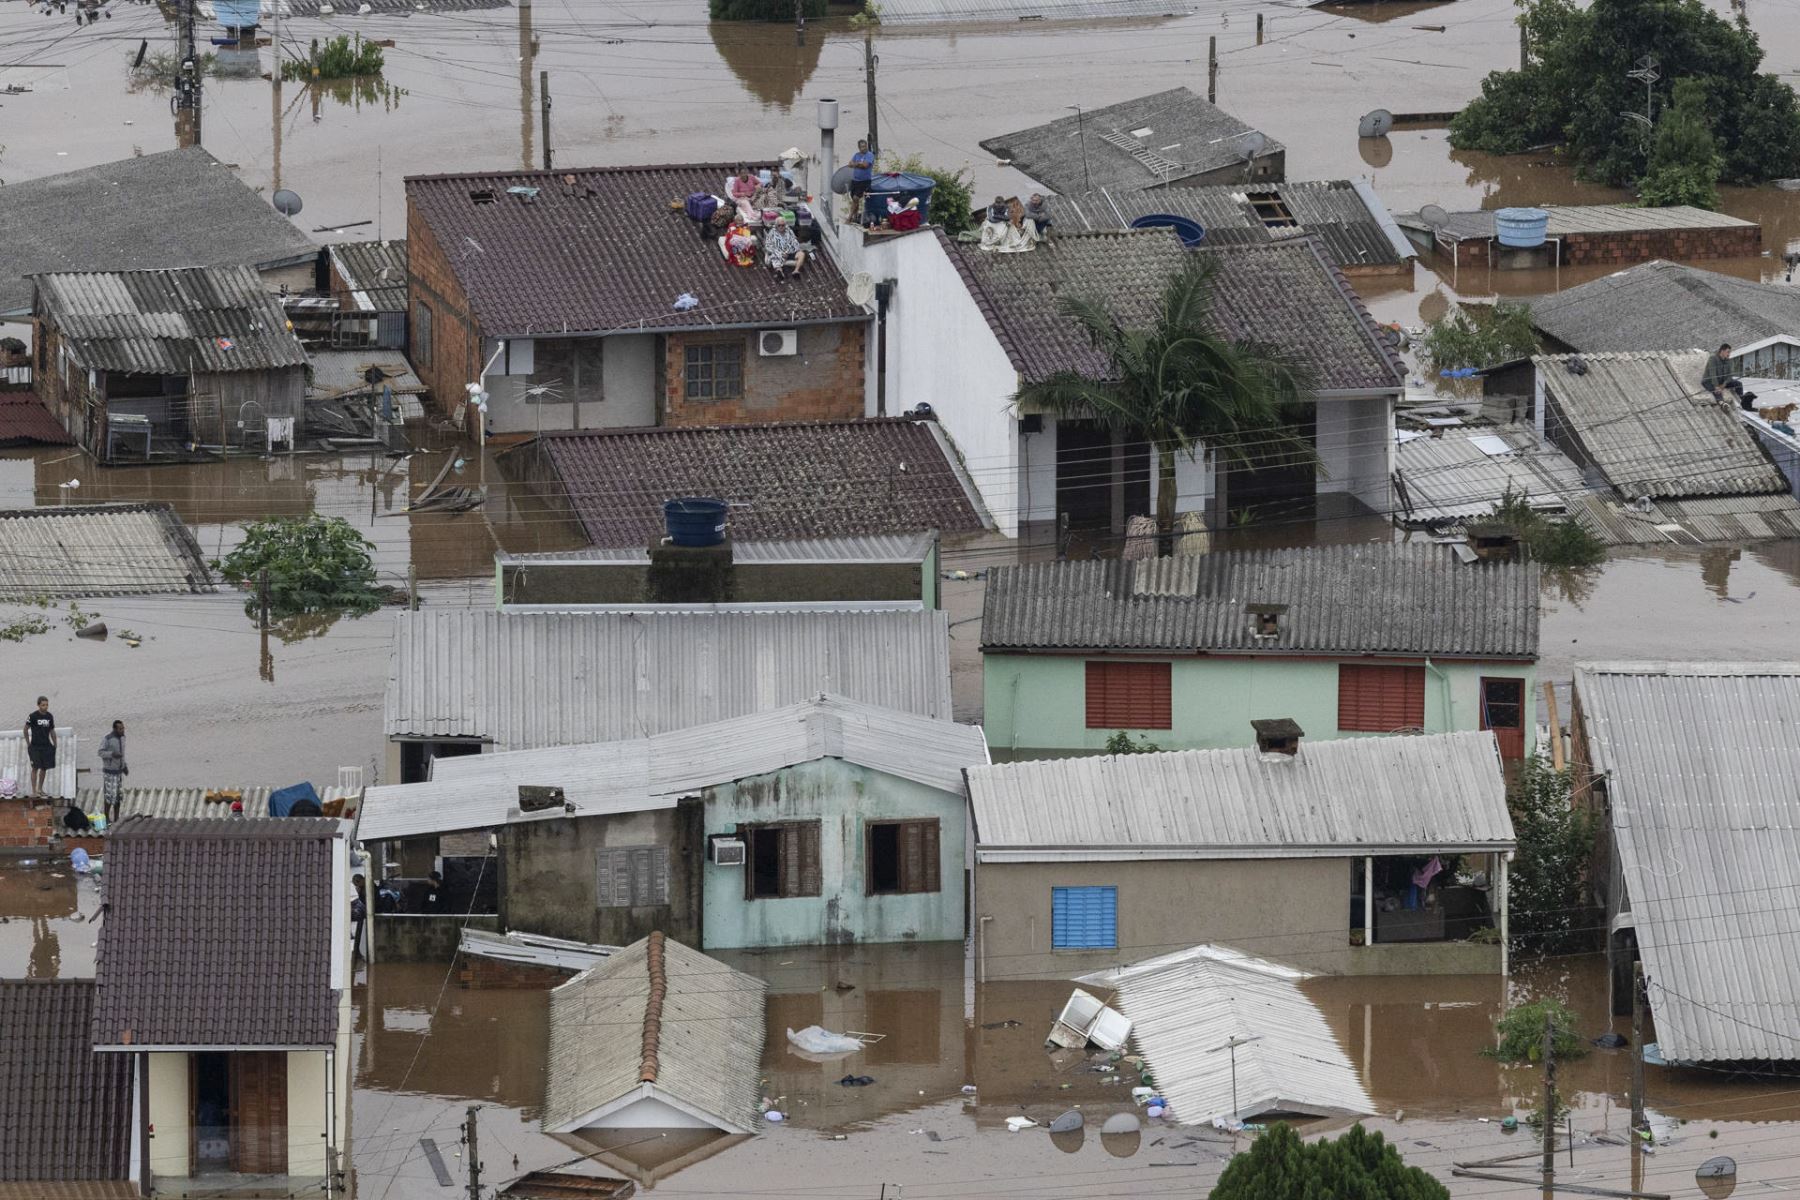 Personas esperan ayuda en el techo de su casa durante una operación de rescate del ejército brasileño junto con los bomberos en Canoas (Brasil), región metropolitana de Porto Alegre, Canoas (Brasil). Según el último balance del Gobierno de Rio Grande do Sul, cuya capital es Porto Alegre, las inundaciones han provocado la muerte de 57 personas en el estado, a las que se suma otra víctima en el vecino estado de Santa Catarina. Además, en Rio Grande do Sul hay 67 desaparecidos, así como 32.640 persona